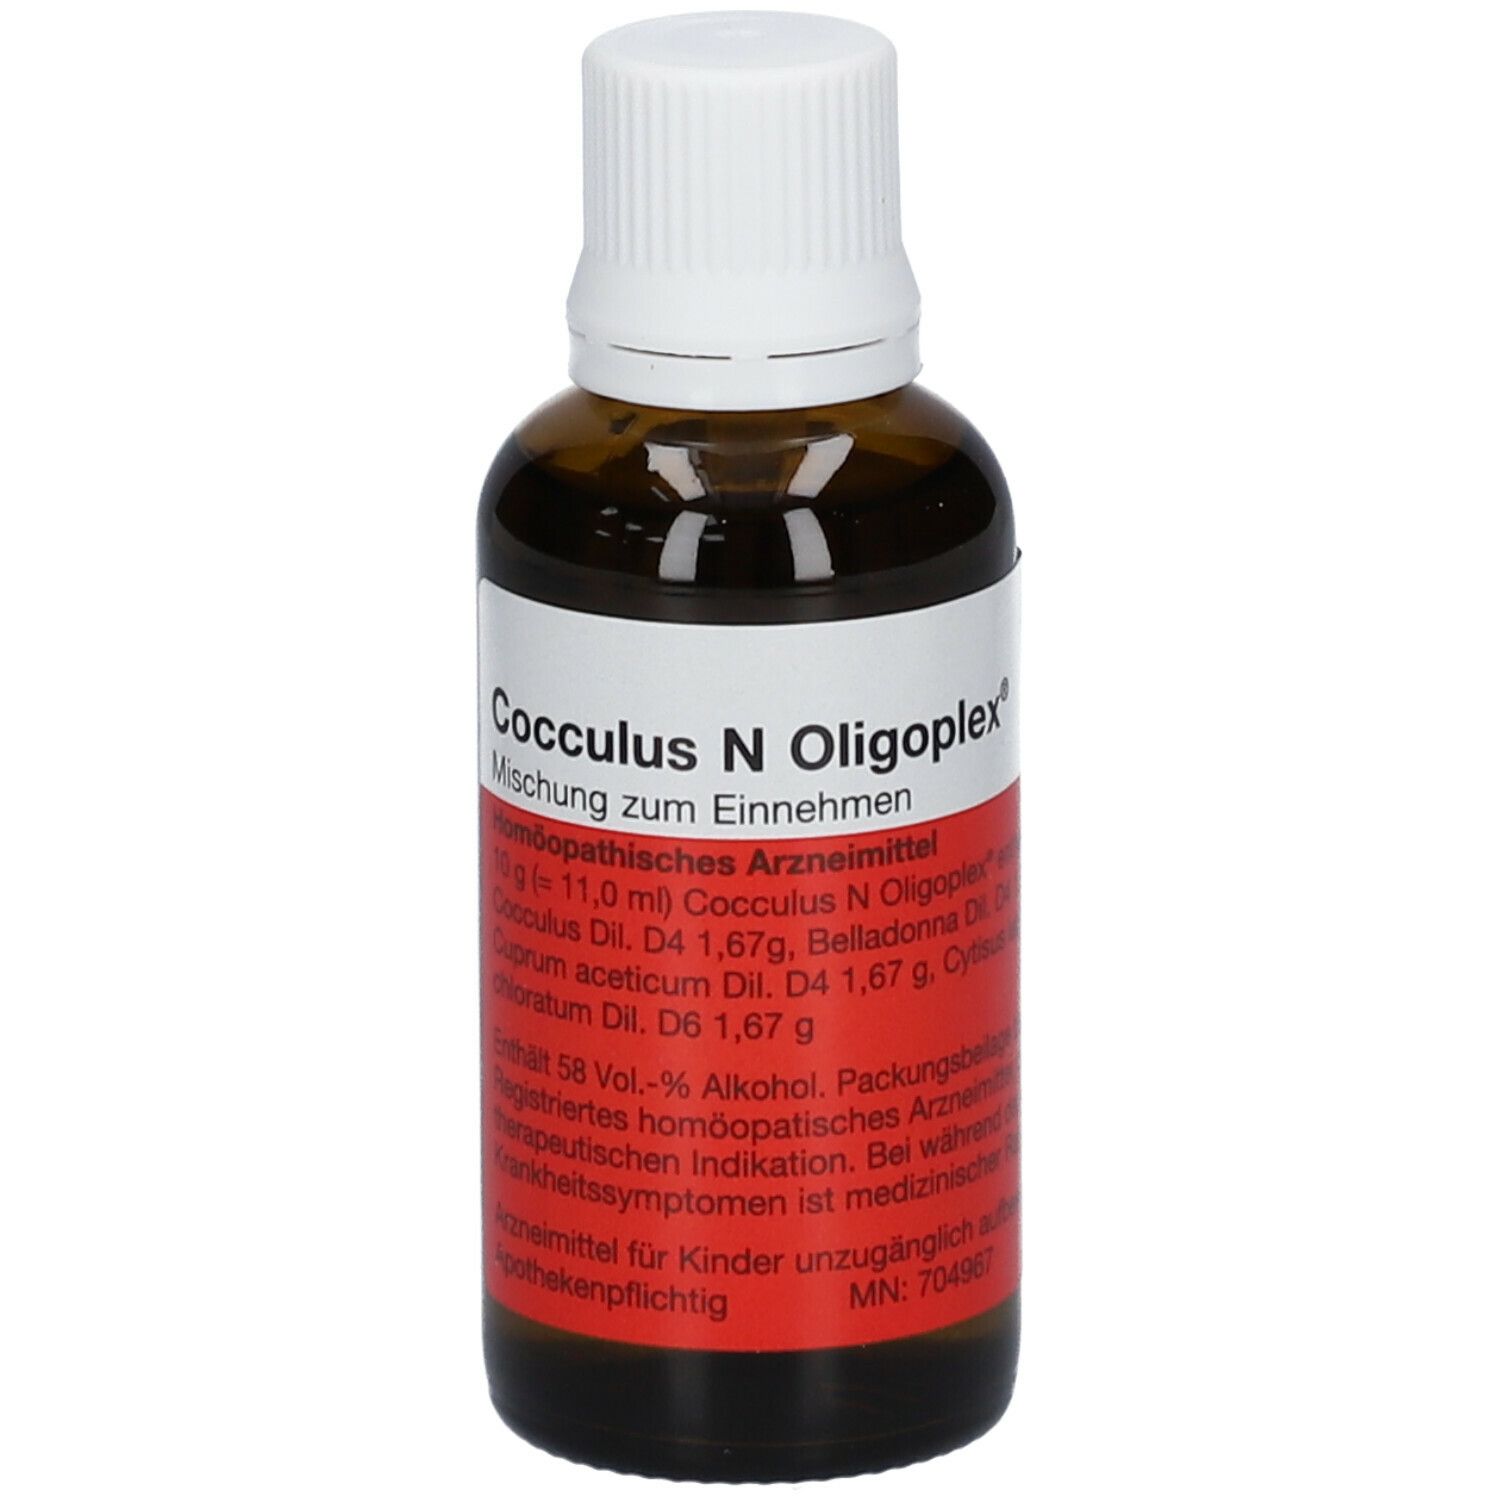 Cocculus N Oligoplex®